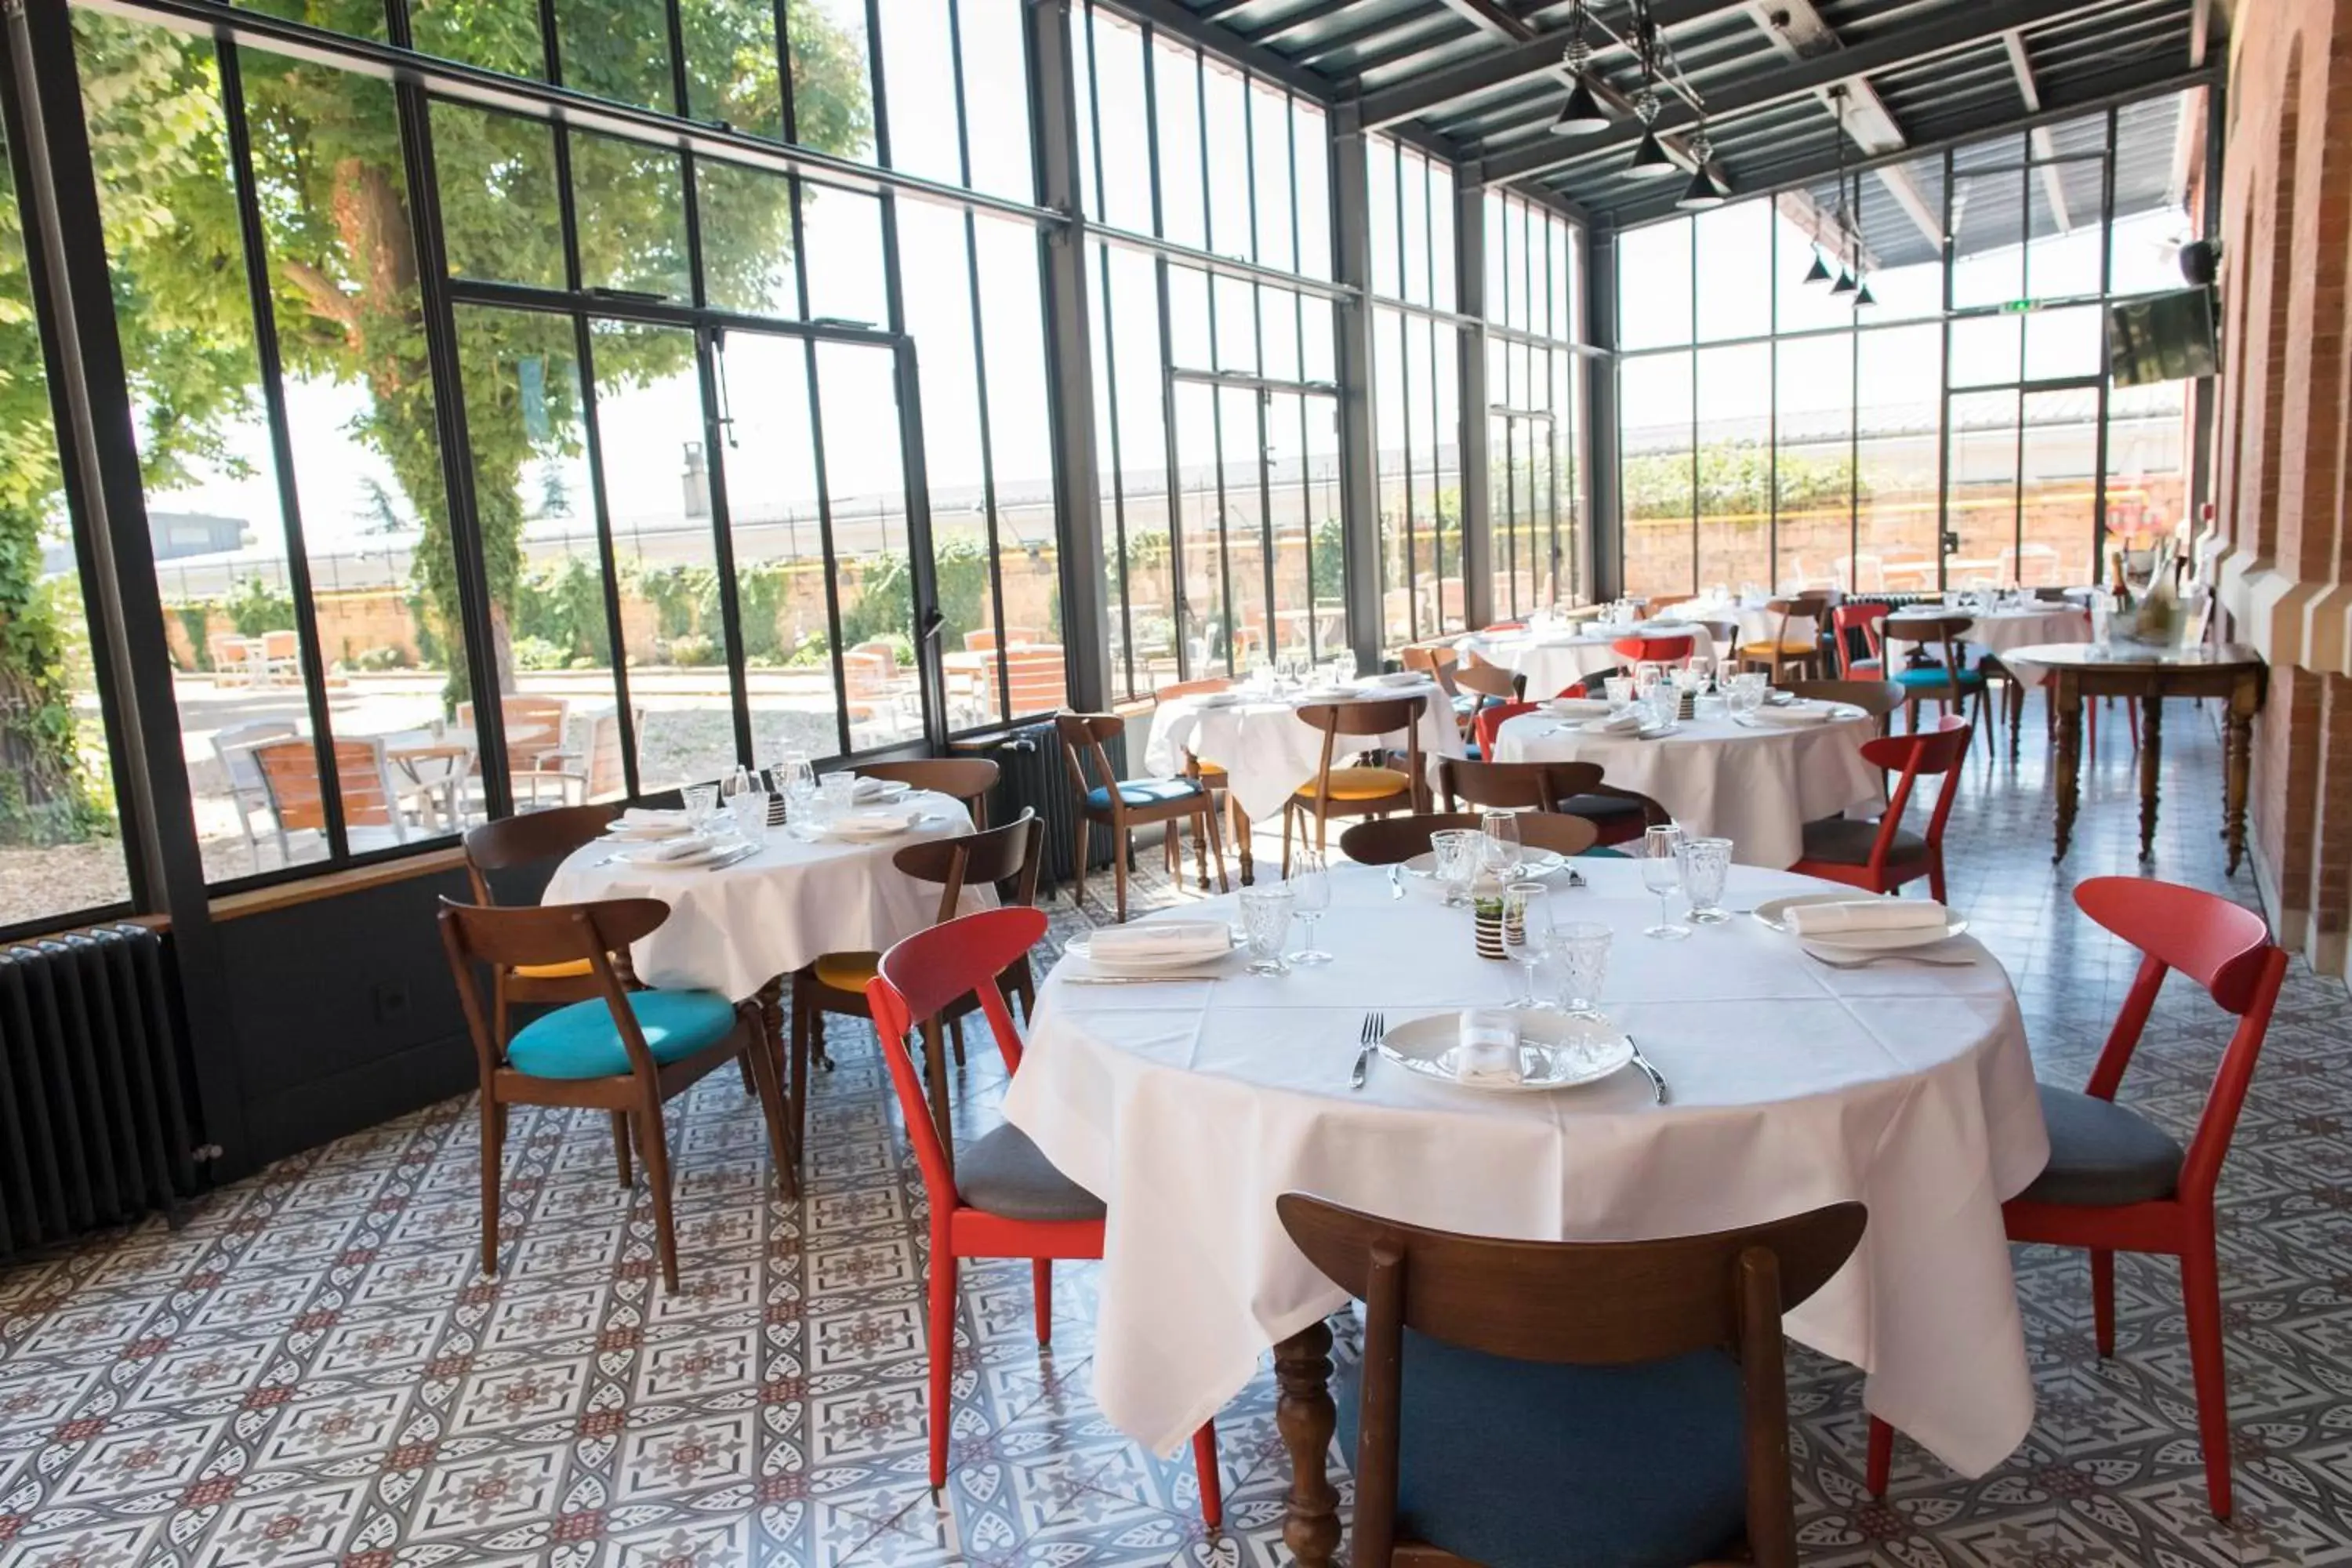 Banquet/Function facilities, Restaurant/Places to Eat in Fourvière Hôtel